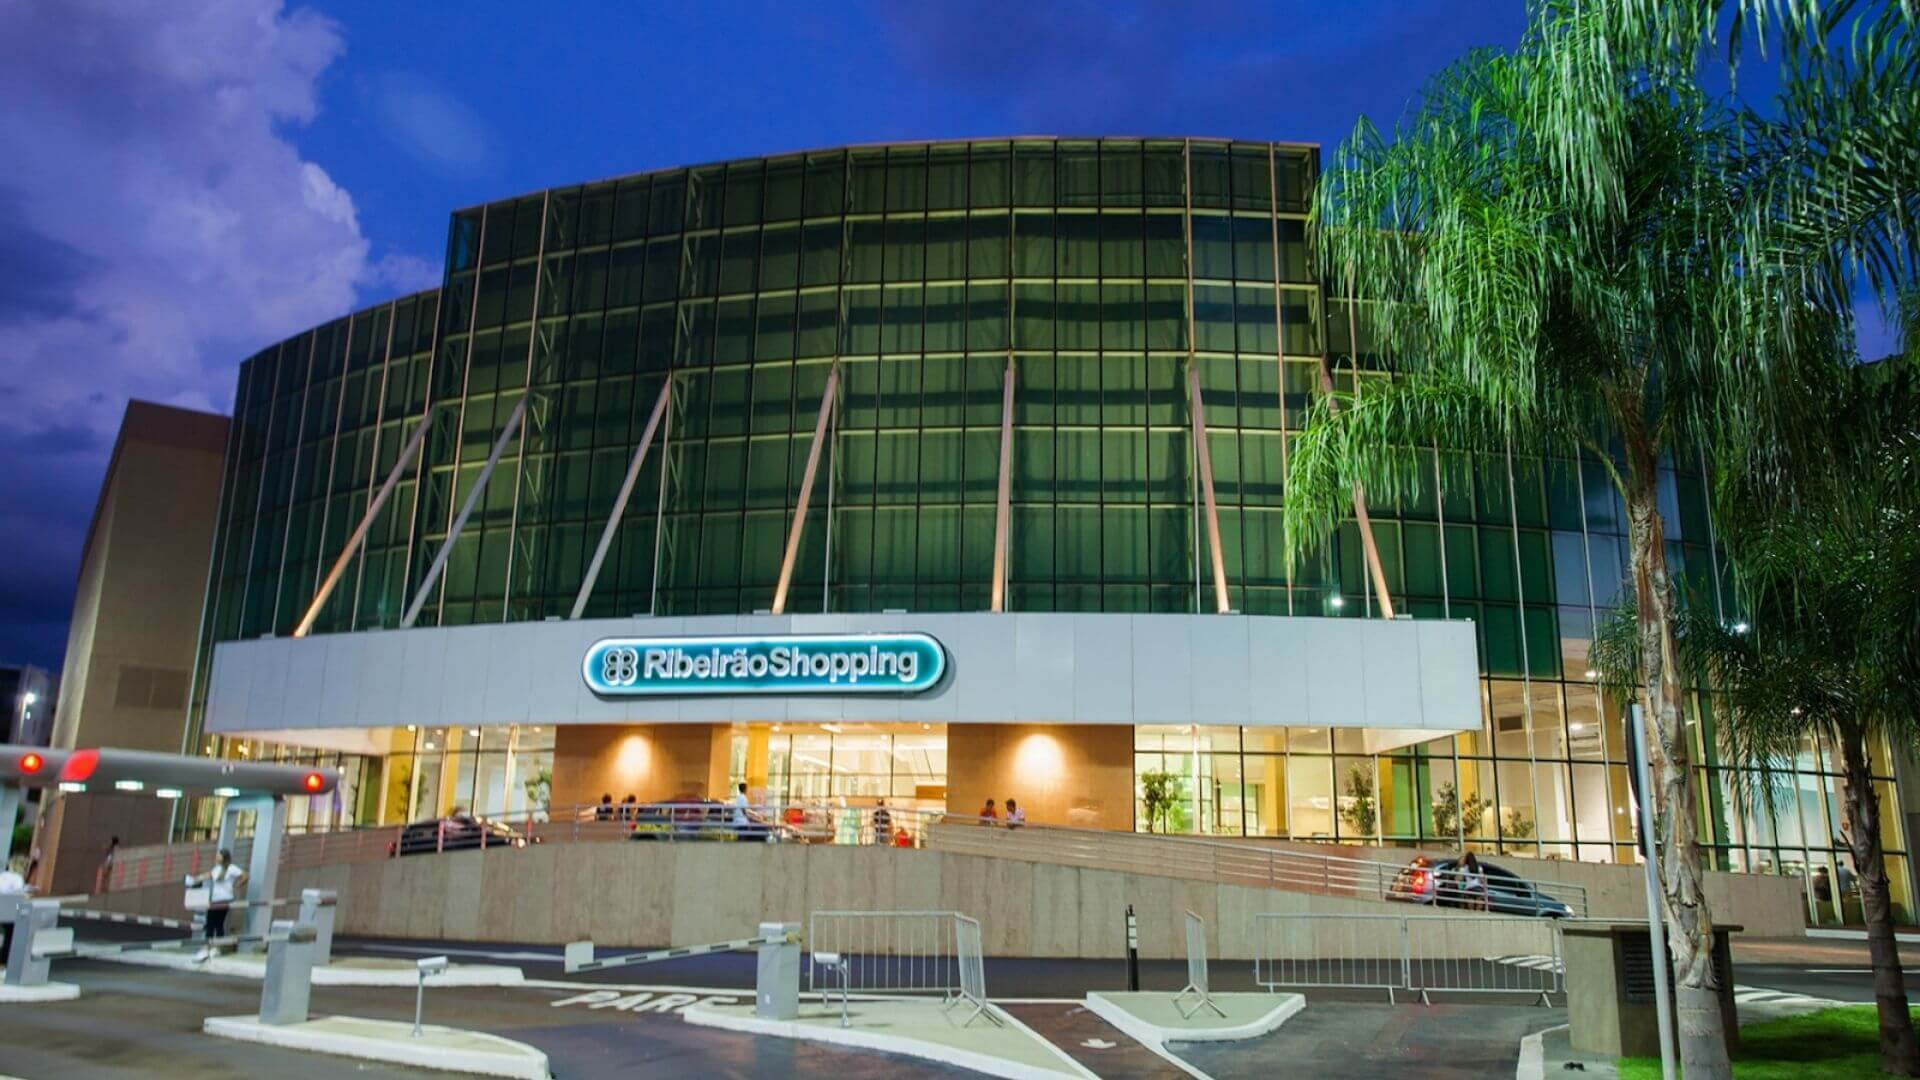 Os 3 melhores shoppings em Ribeirão Preto